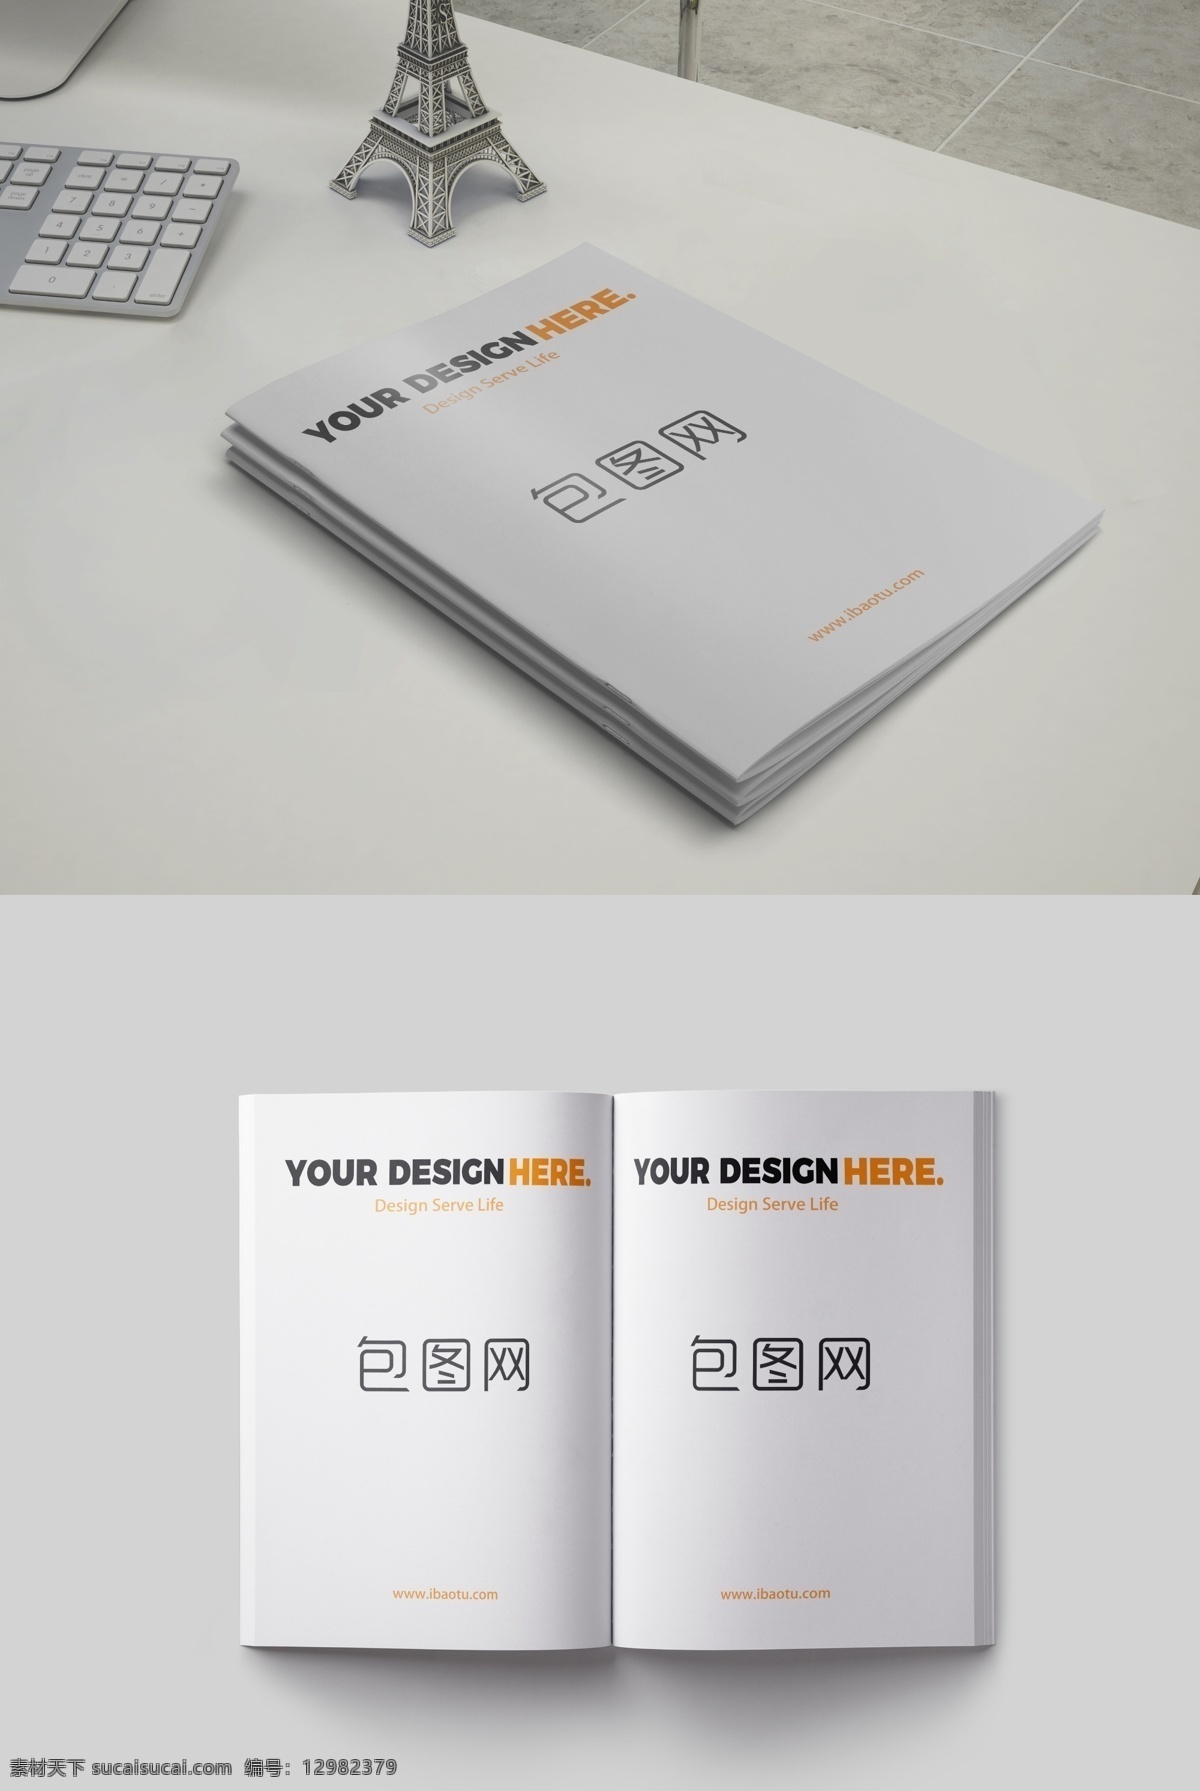 画册设计 企业画册 宣传画册 产品画册 宣传册 宣传册设计